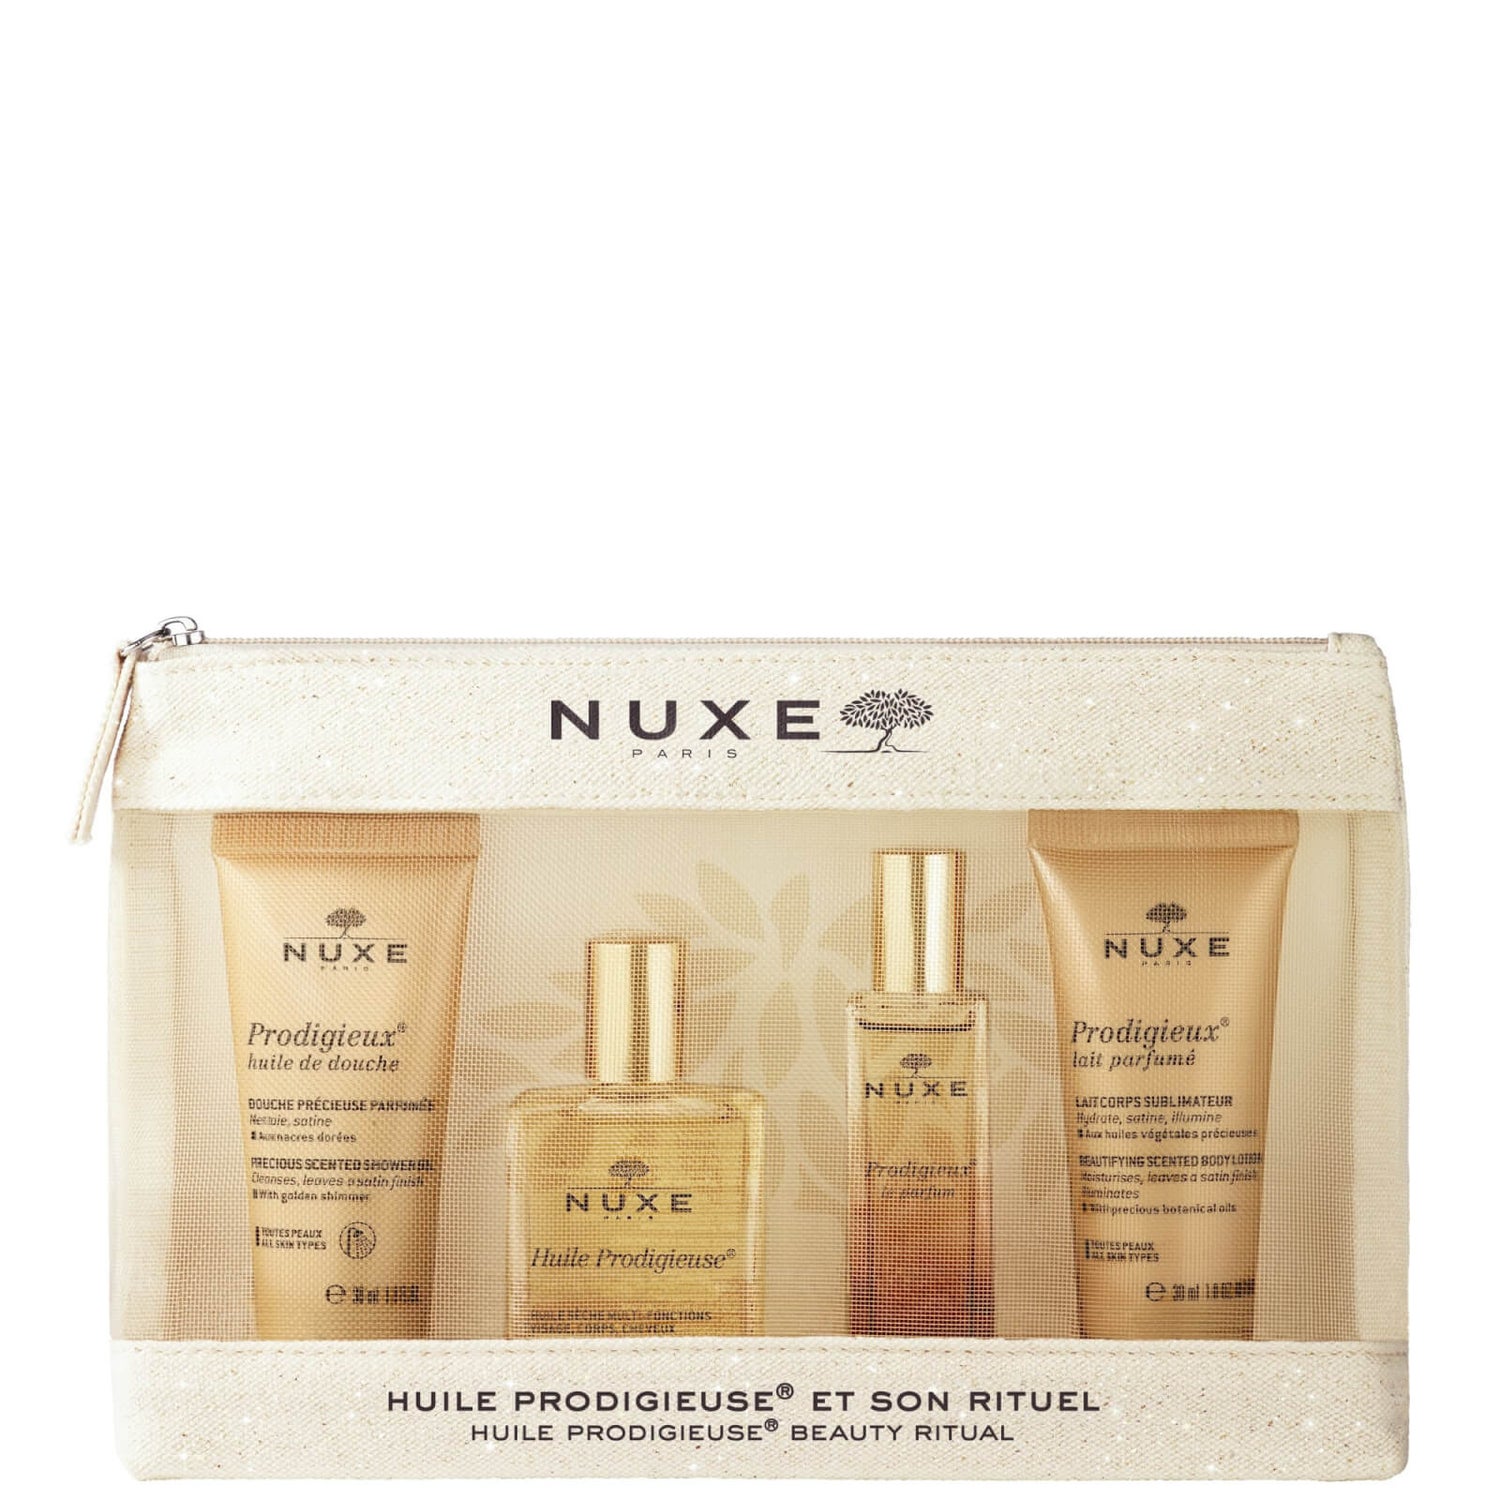 Nuxe Prodigieuse® Travel Kit